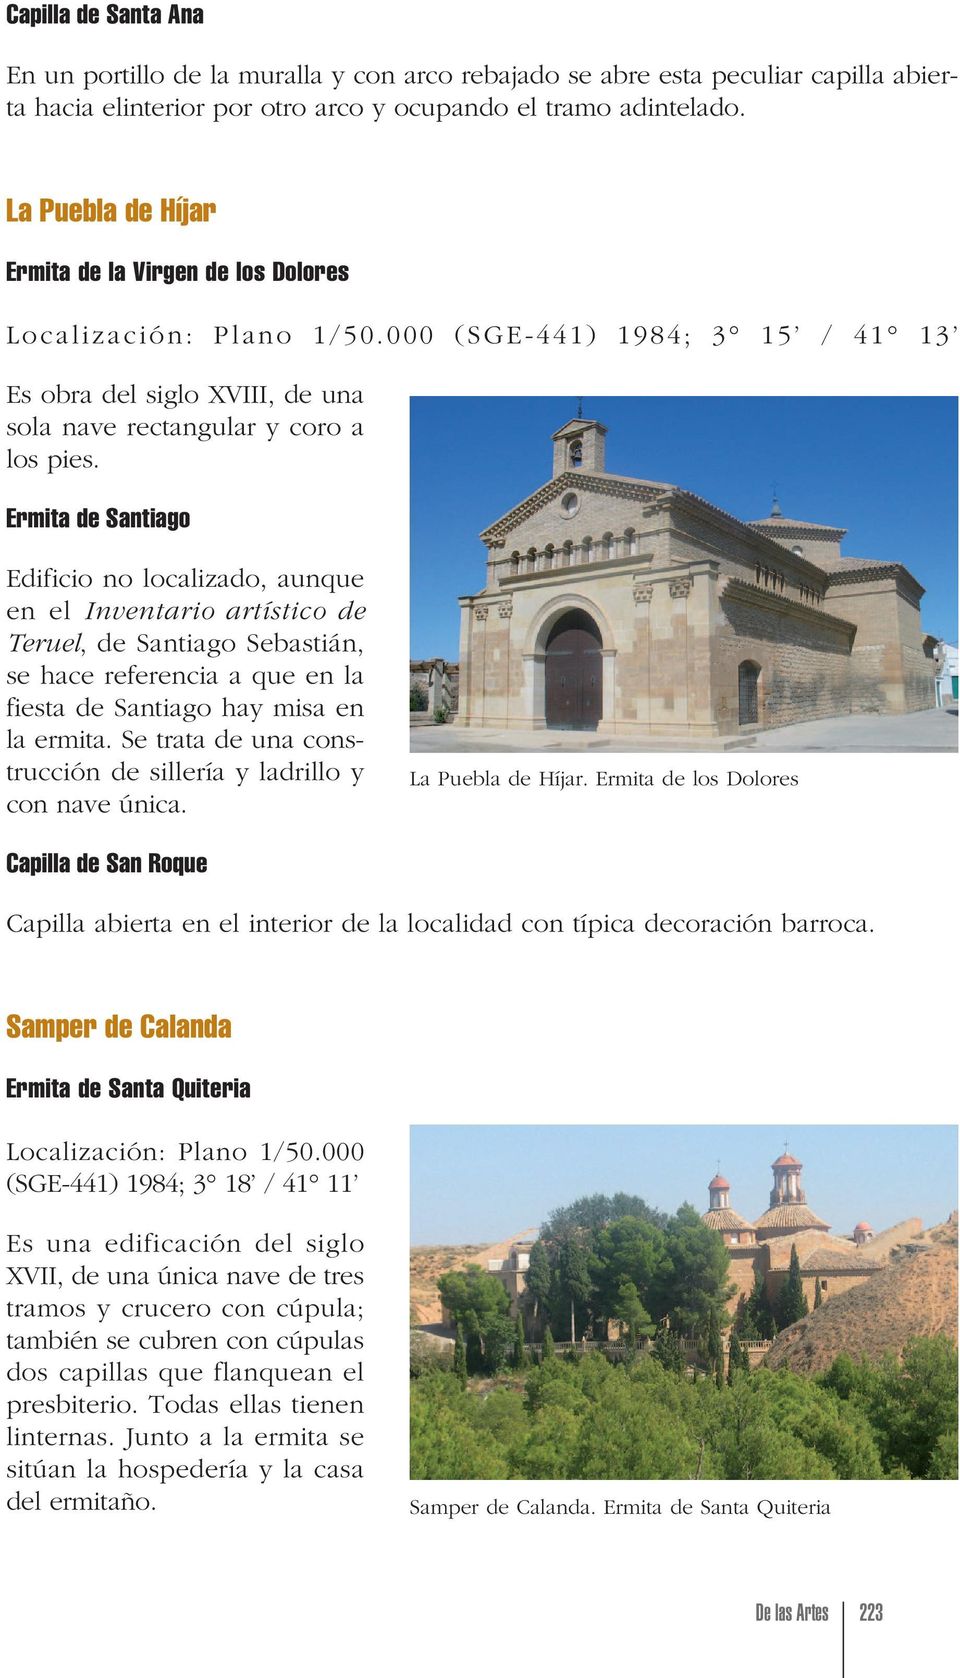 Ermita de Santiago Edificio no localizado, aunque en el Inventario artístico de Teruel, de Santiago Sebastián, se hace referencia a que en la fiesta de Santiago hay misa en la ermita.